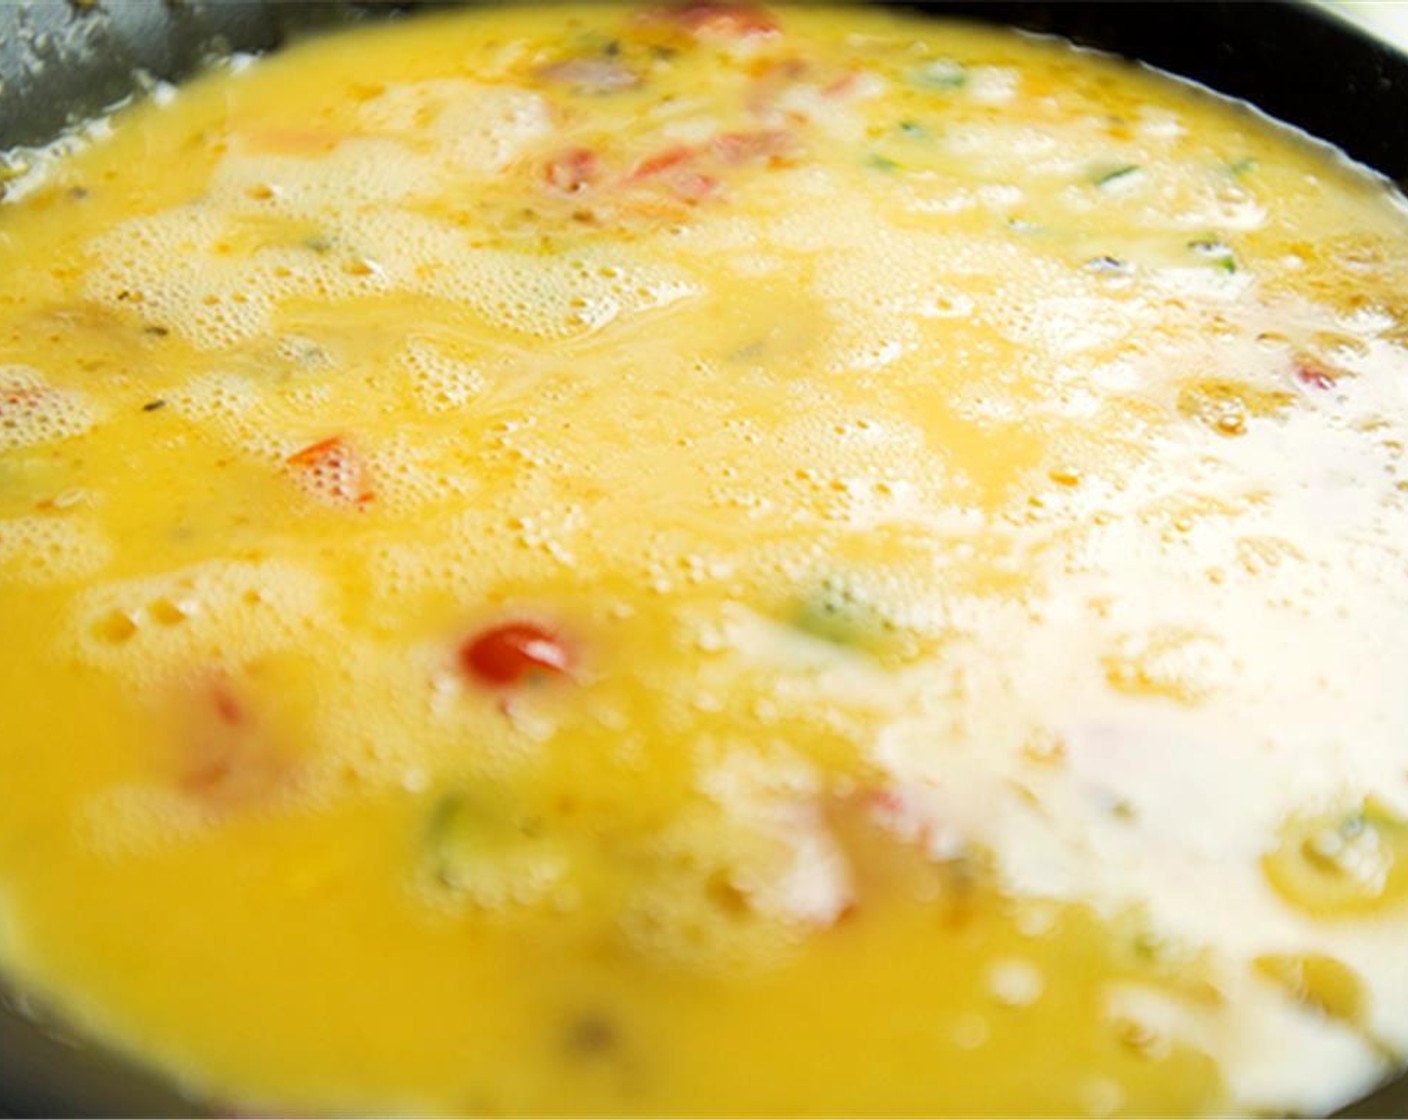 Schritt 5 In einer separaten Schüssel Eier (9) zusammen mit Salz (nach Bedarf) und Pfeffer (nach Bedarf) verquirlen. Die Eimischung in die Pfanne über das Gemüse geben und vorsichtig umrühren.